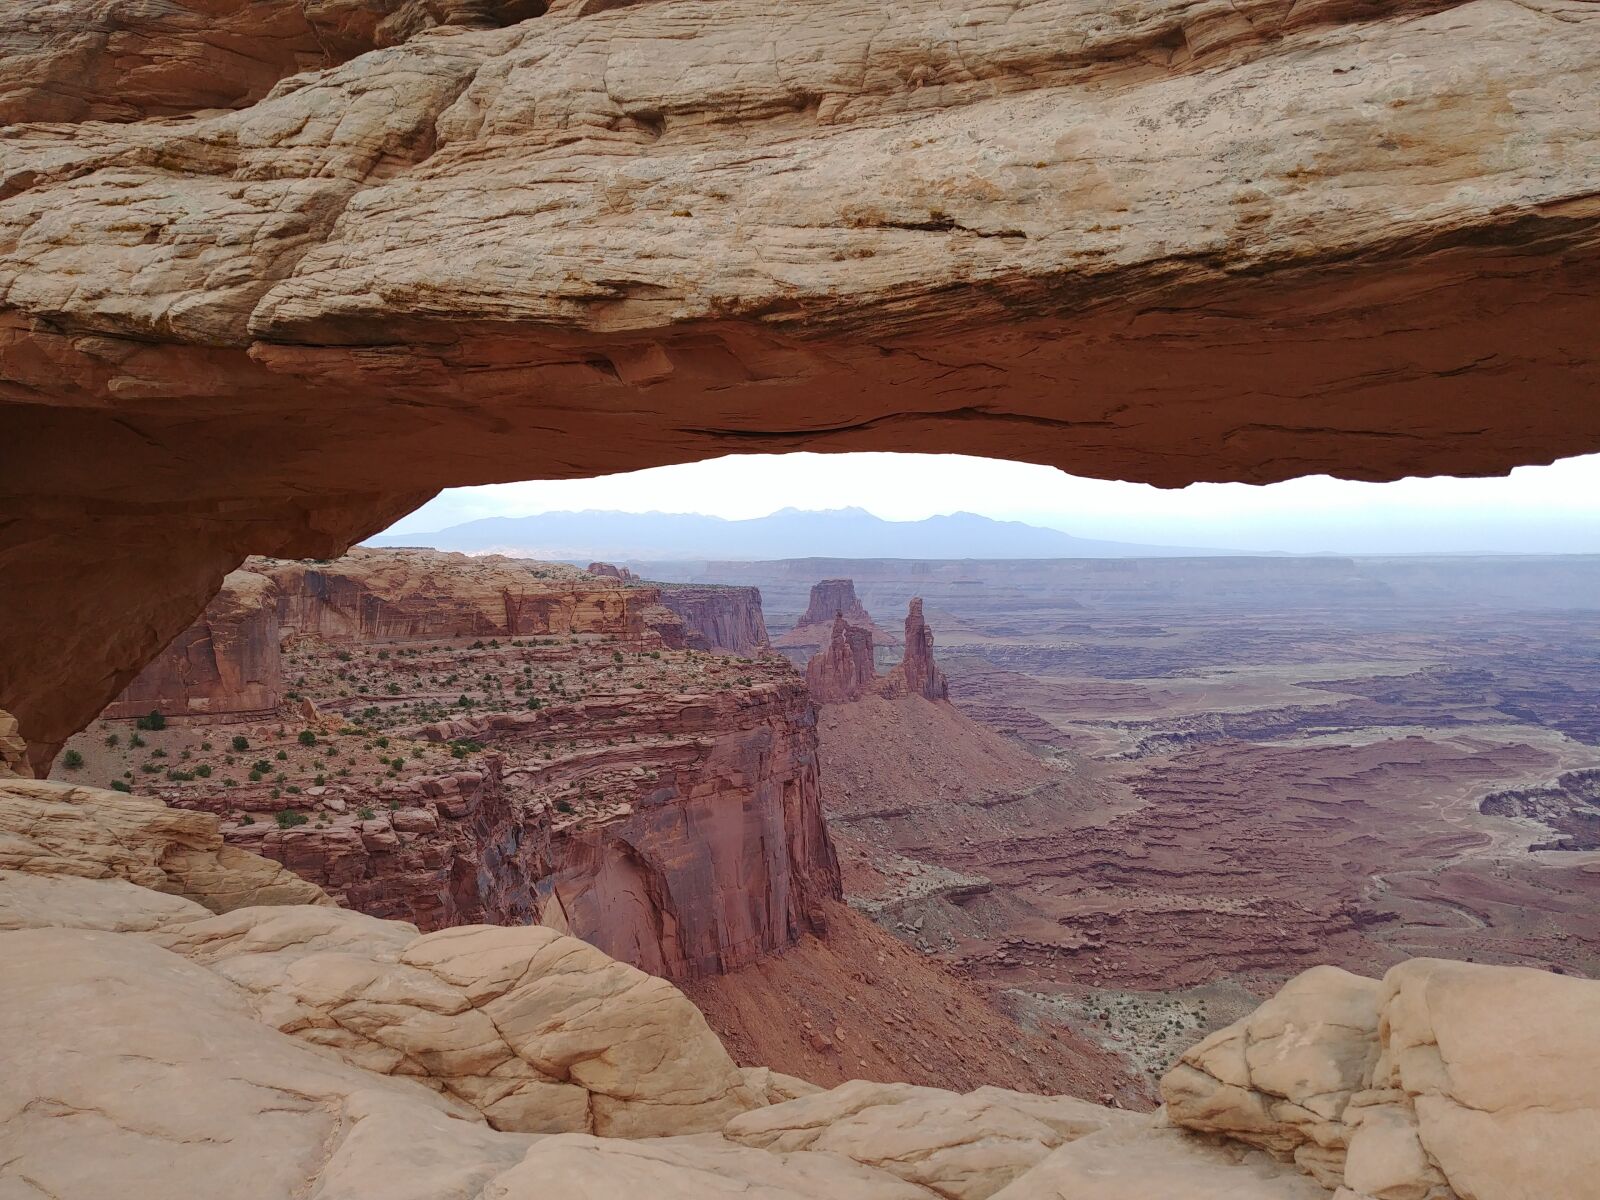 LG G6 sample photo. Mesa arch, canyonlands, utah photography